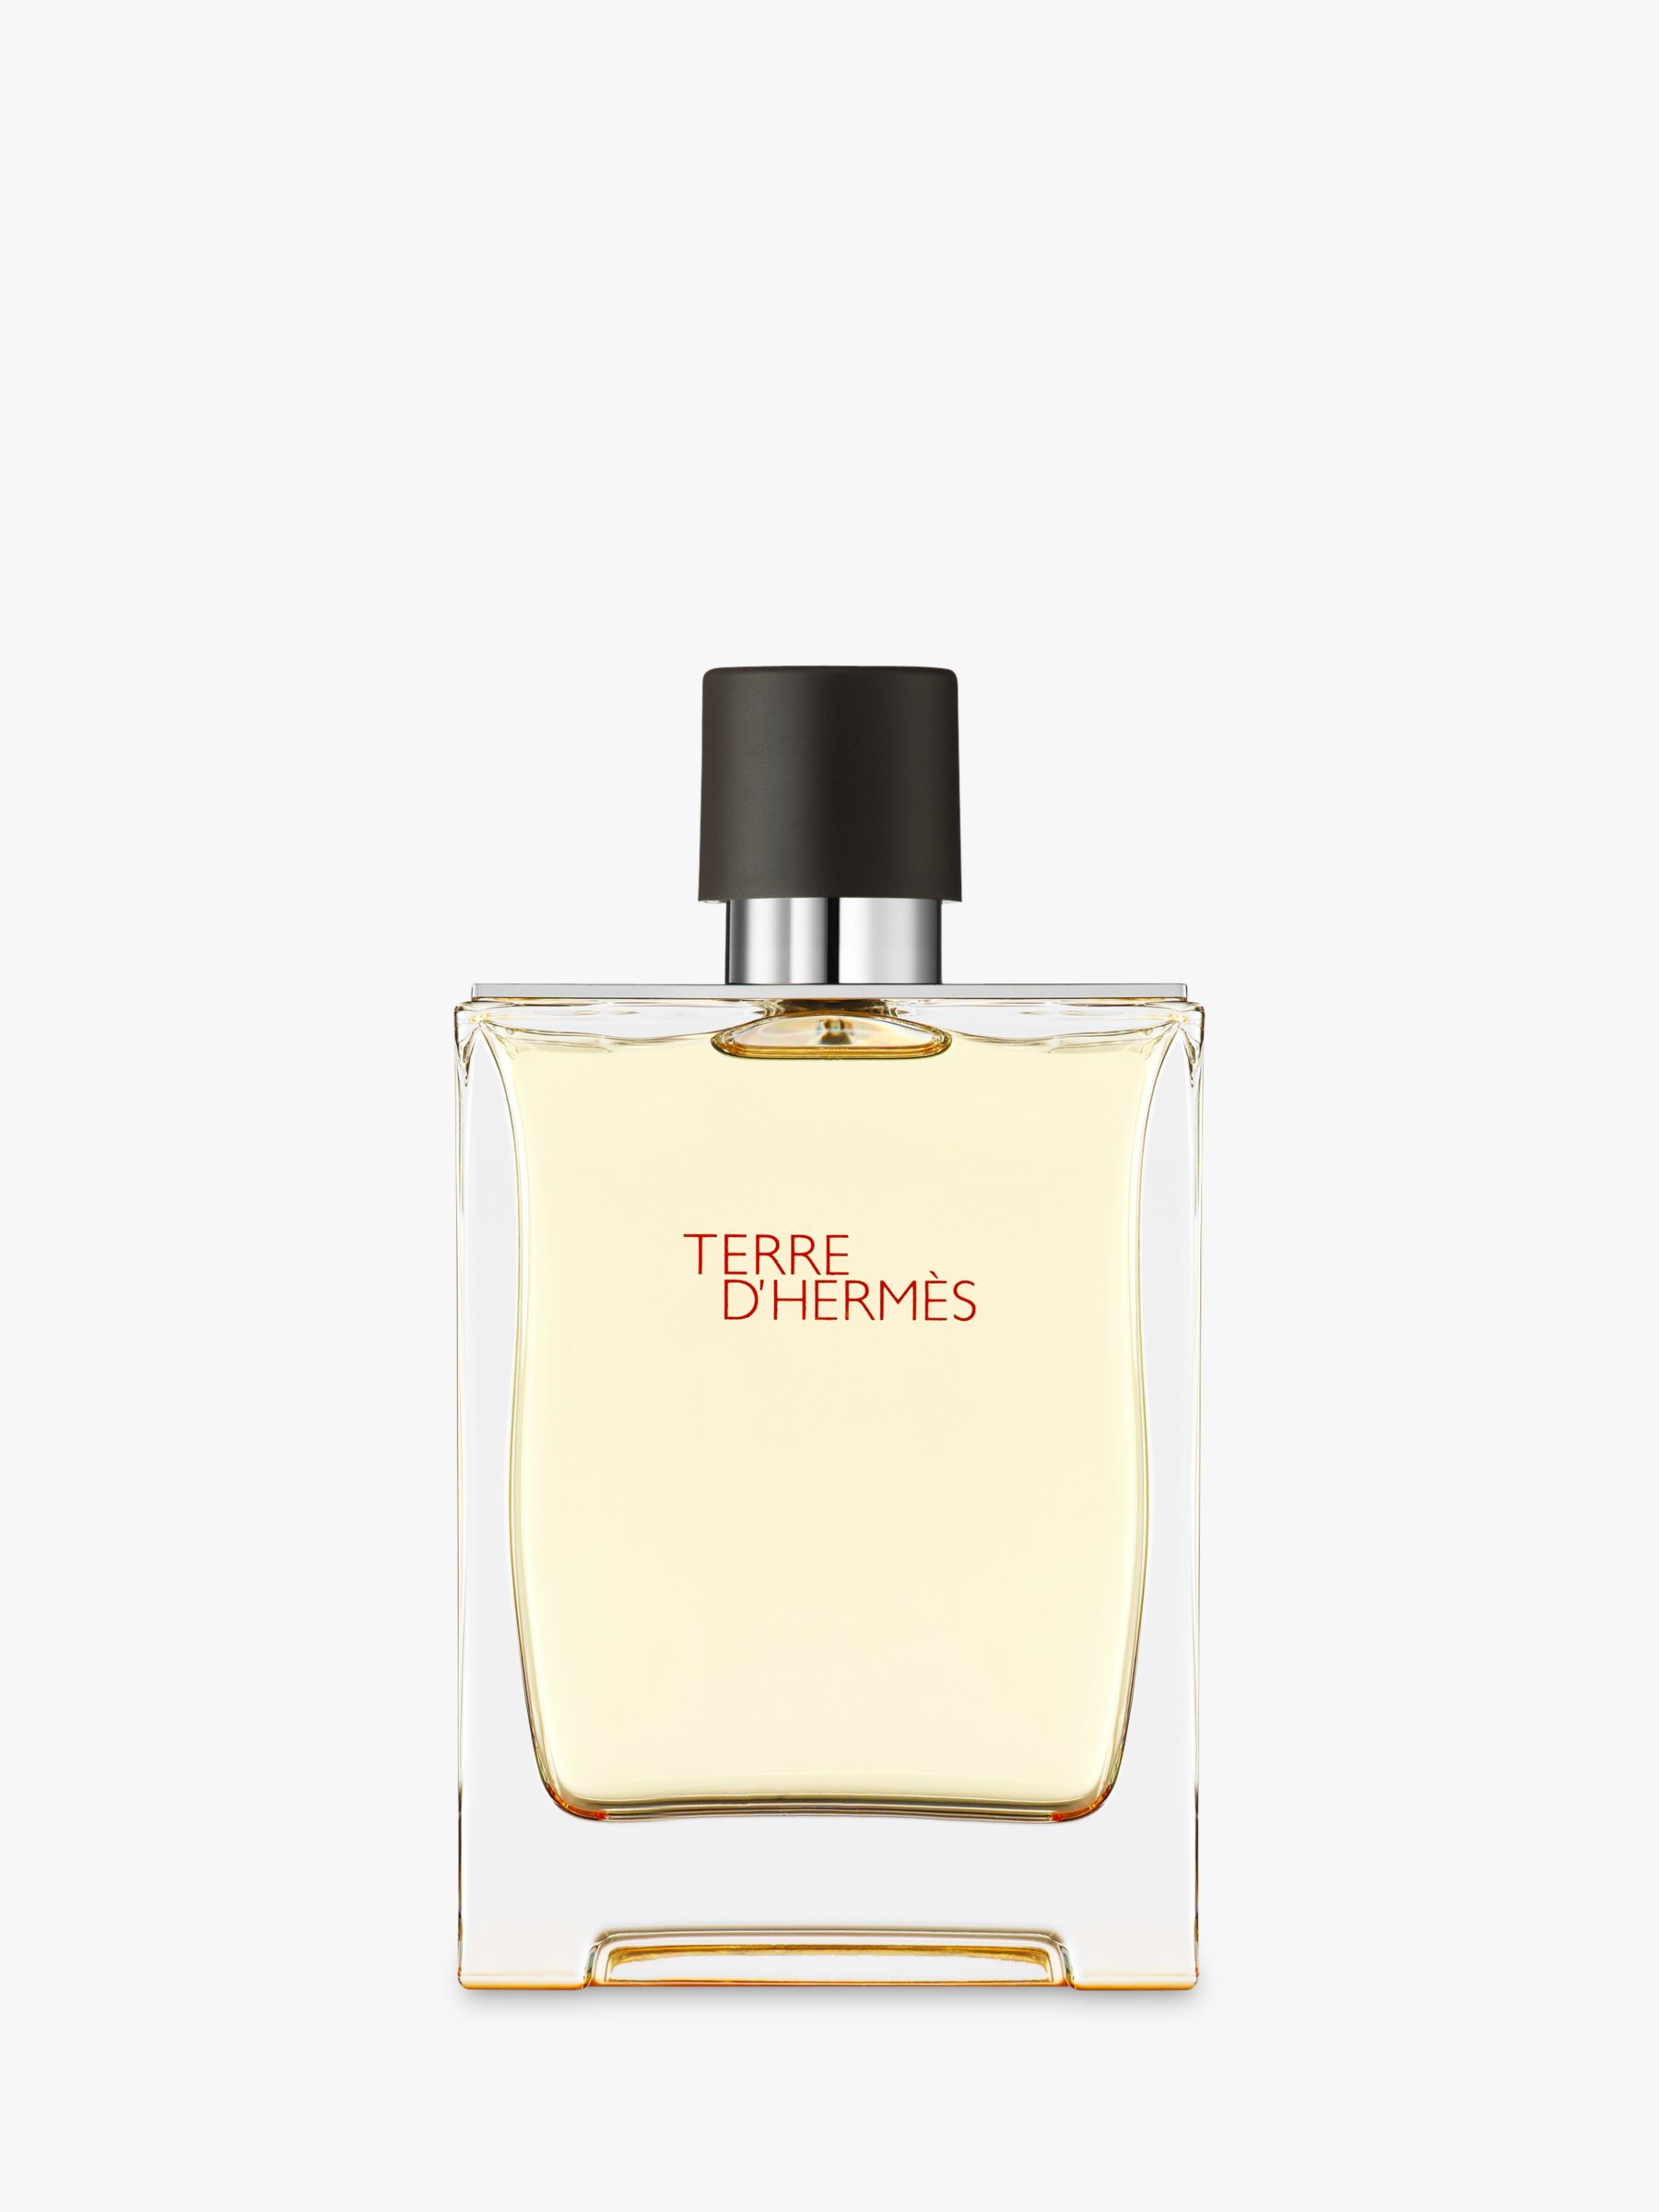 Hermès - Men's Aftershave